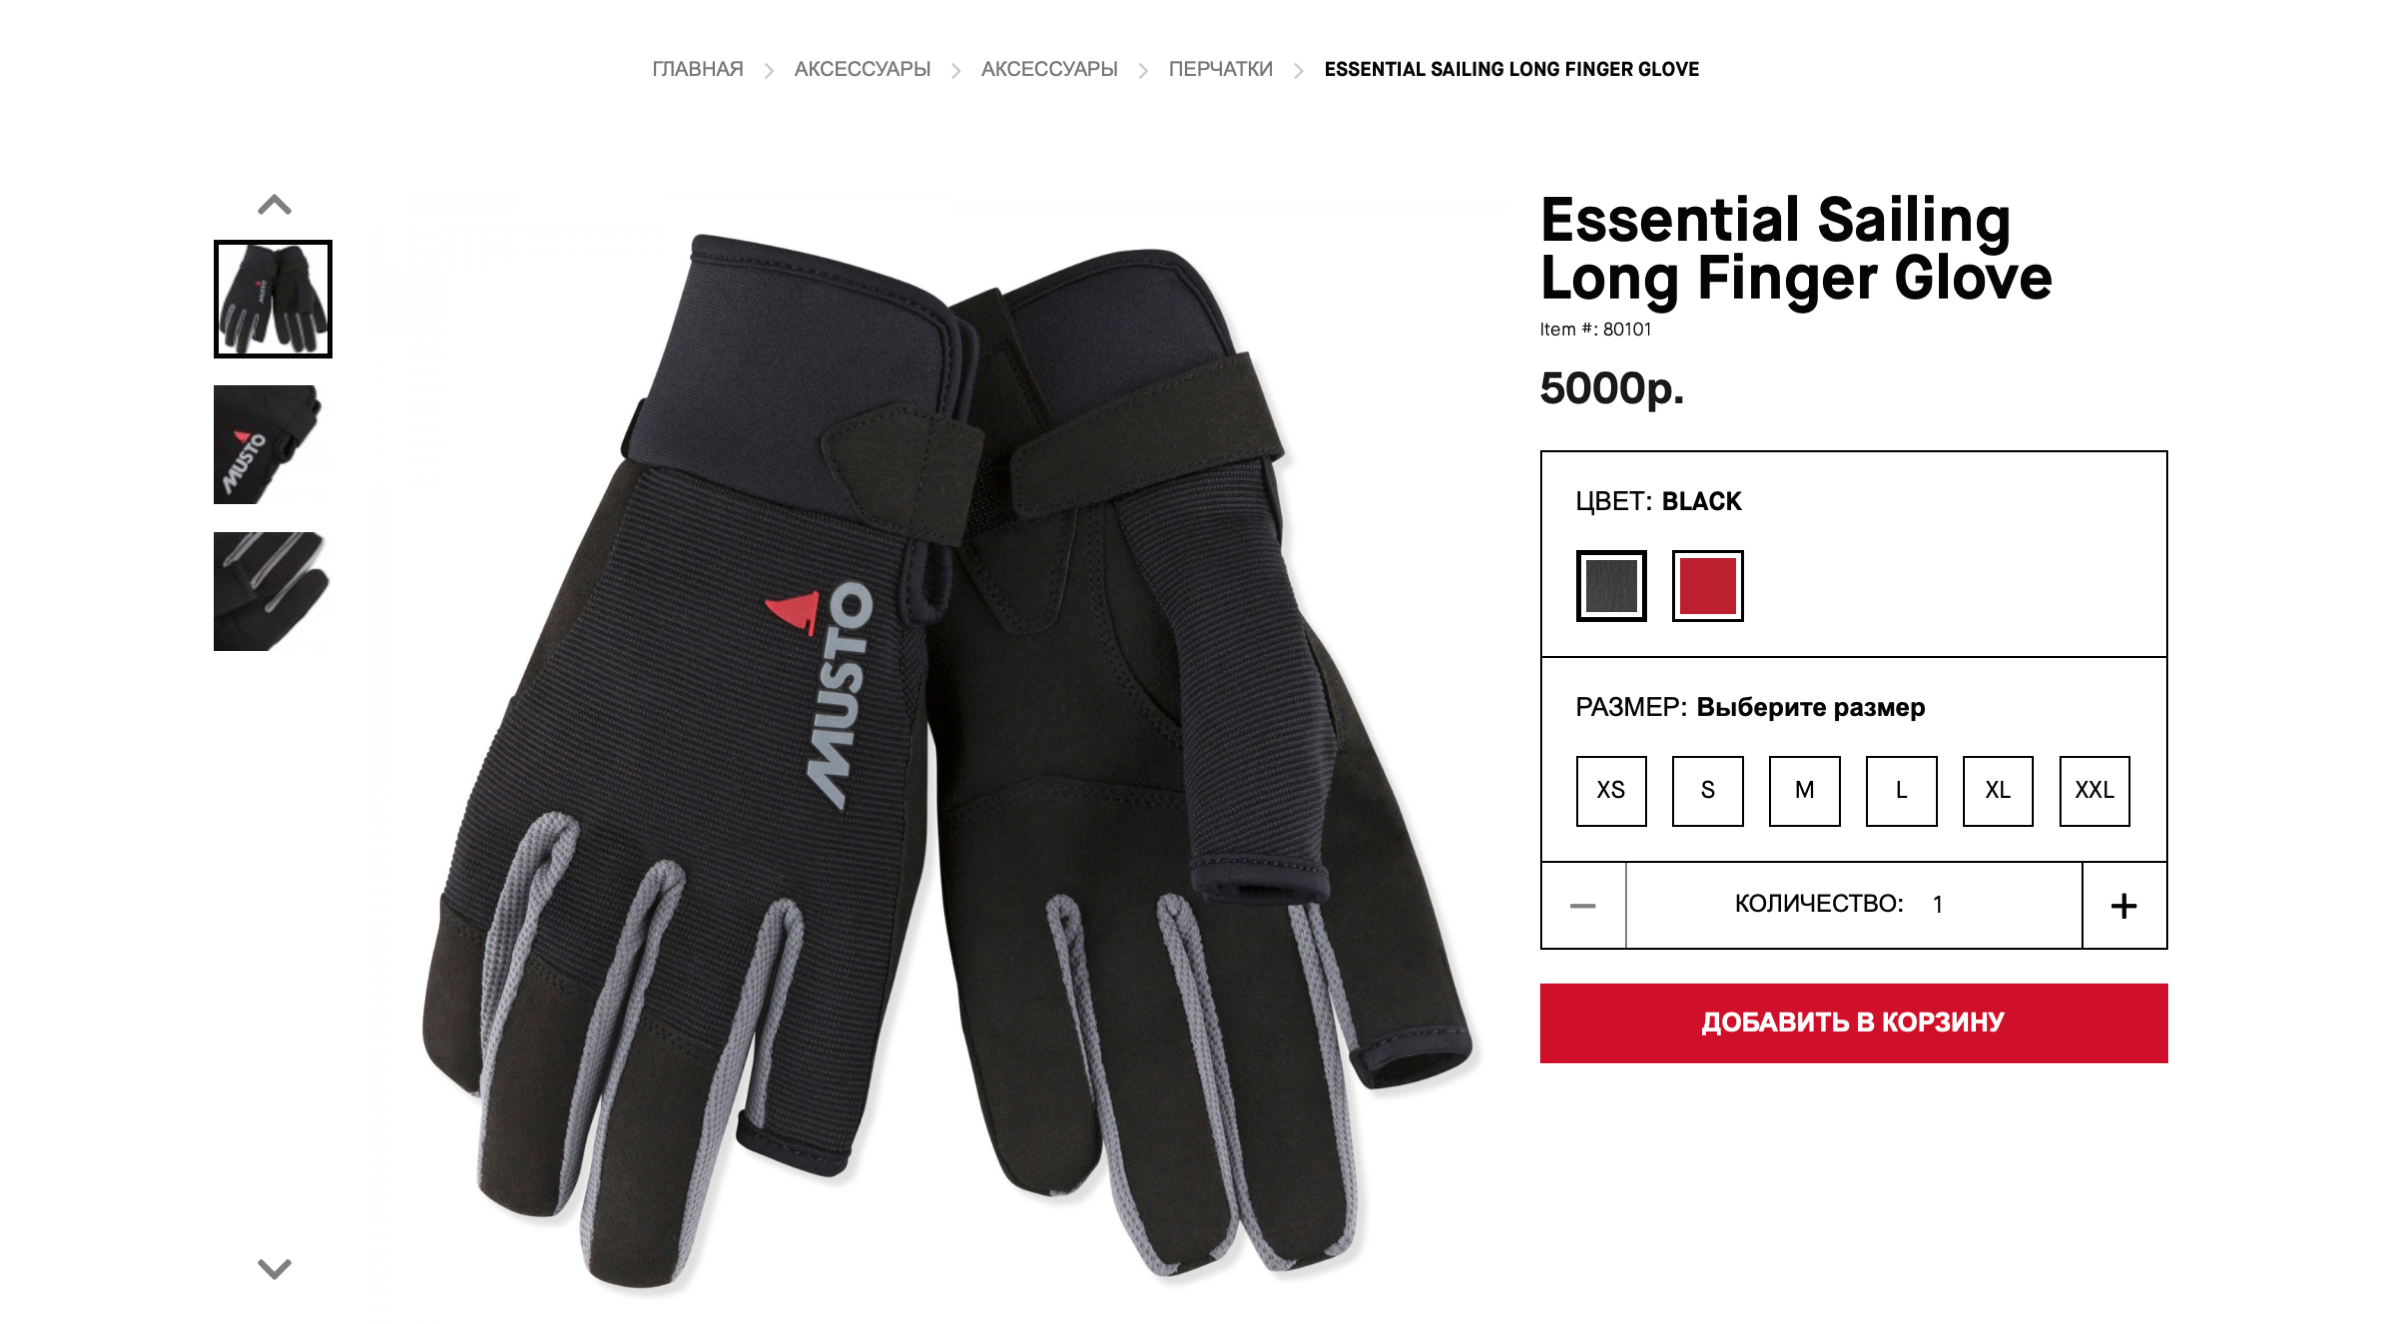 Профессиональные перчатки Musto Essential Sailing Long Finger Glove за 5000 ₽. Источник: musto.com.ru